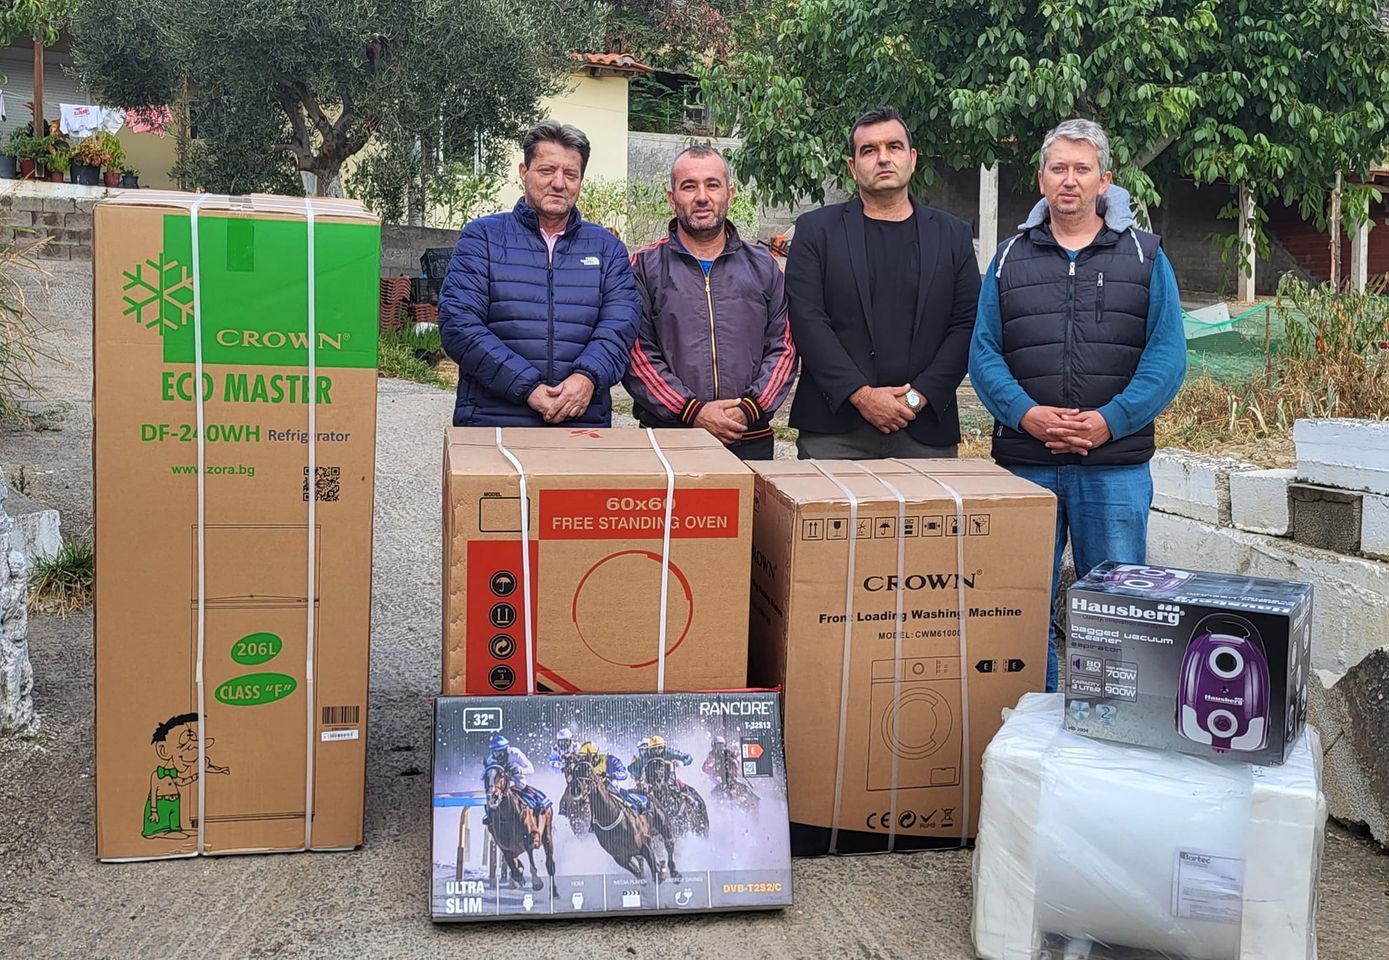 ΔΕΜΠ Κομοτηνής: Συνεχίζει το κοινωνικό της έργο με δωρεές ιατρικού και οικιακού εξοπλισμού σε πολίτες της Θράκης που έχουν ανάγκη